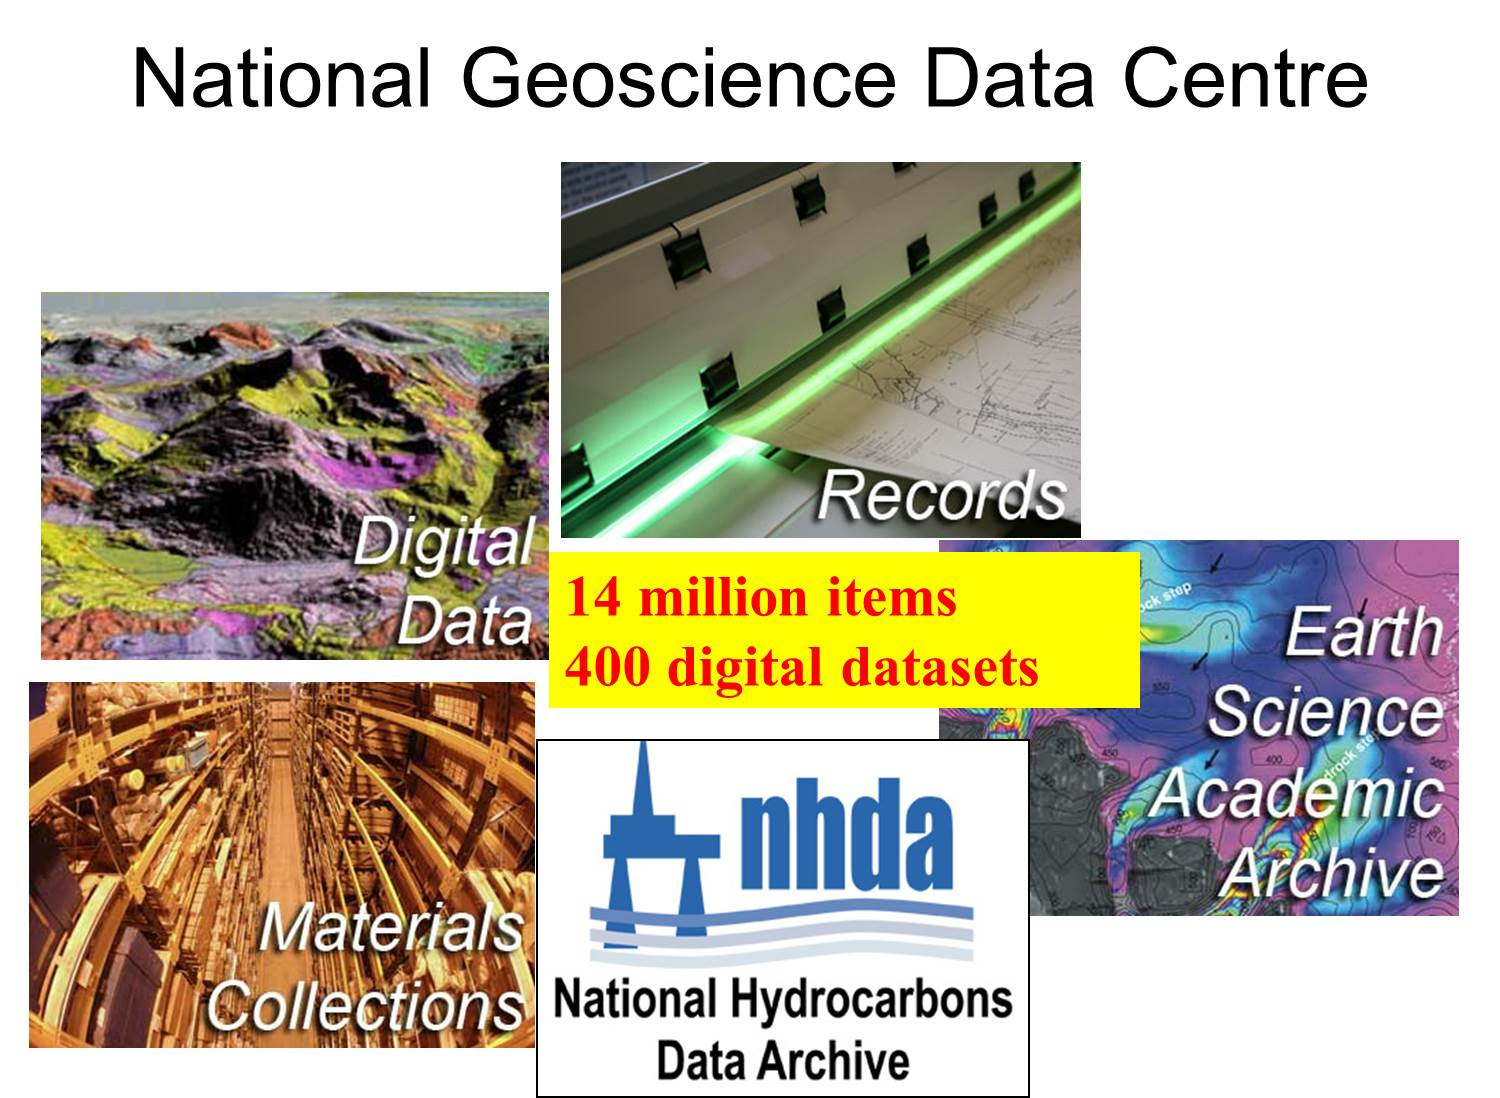 그림 2-8. National Geoscience Data Centre.